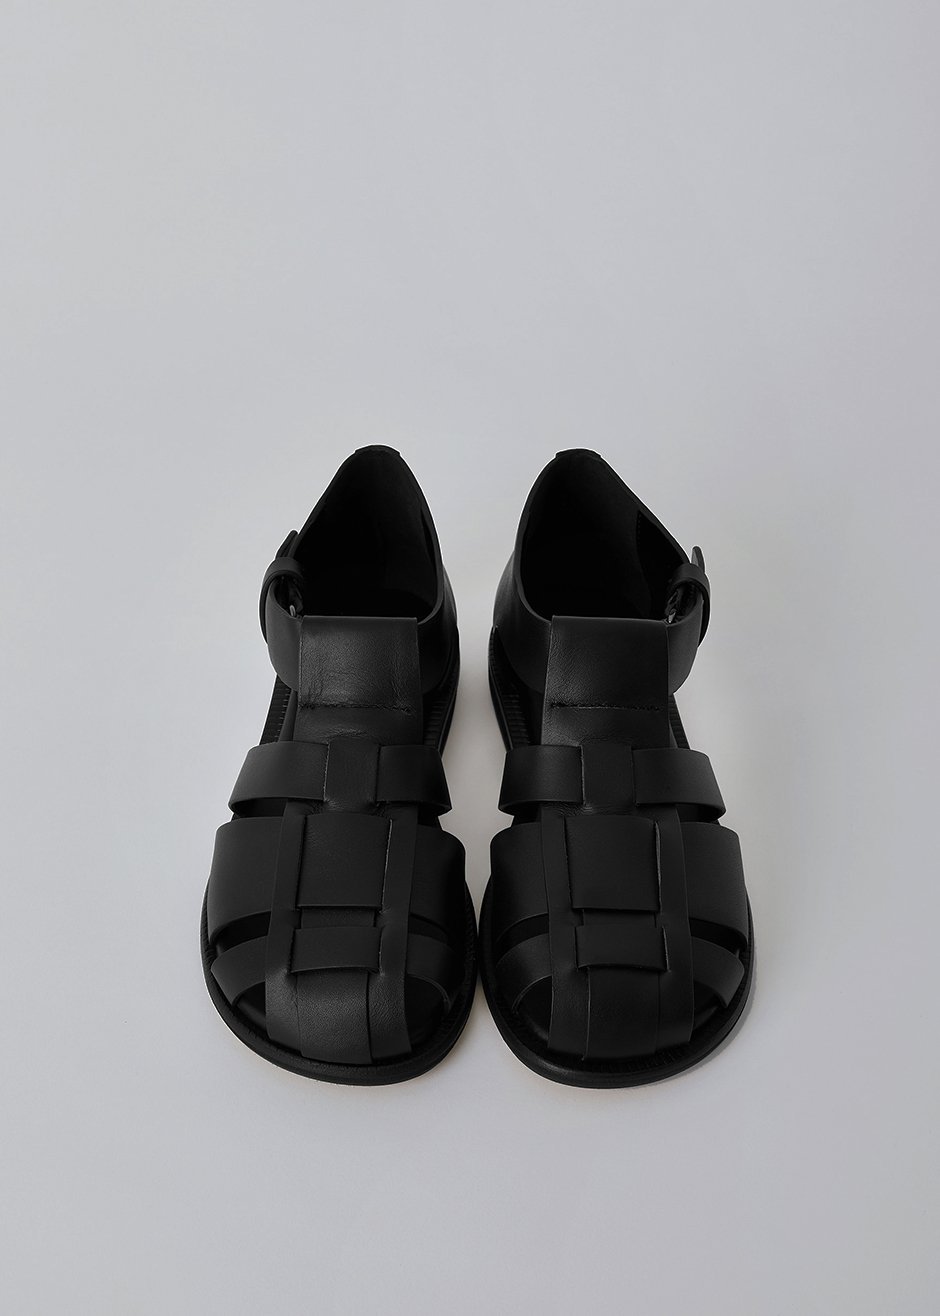 Low Classic Gladiator Sandals - Black